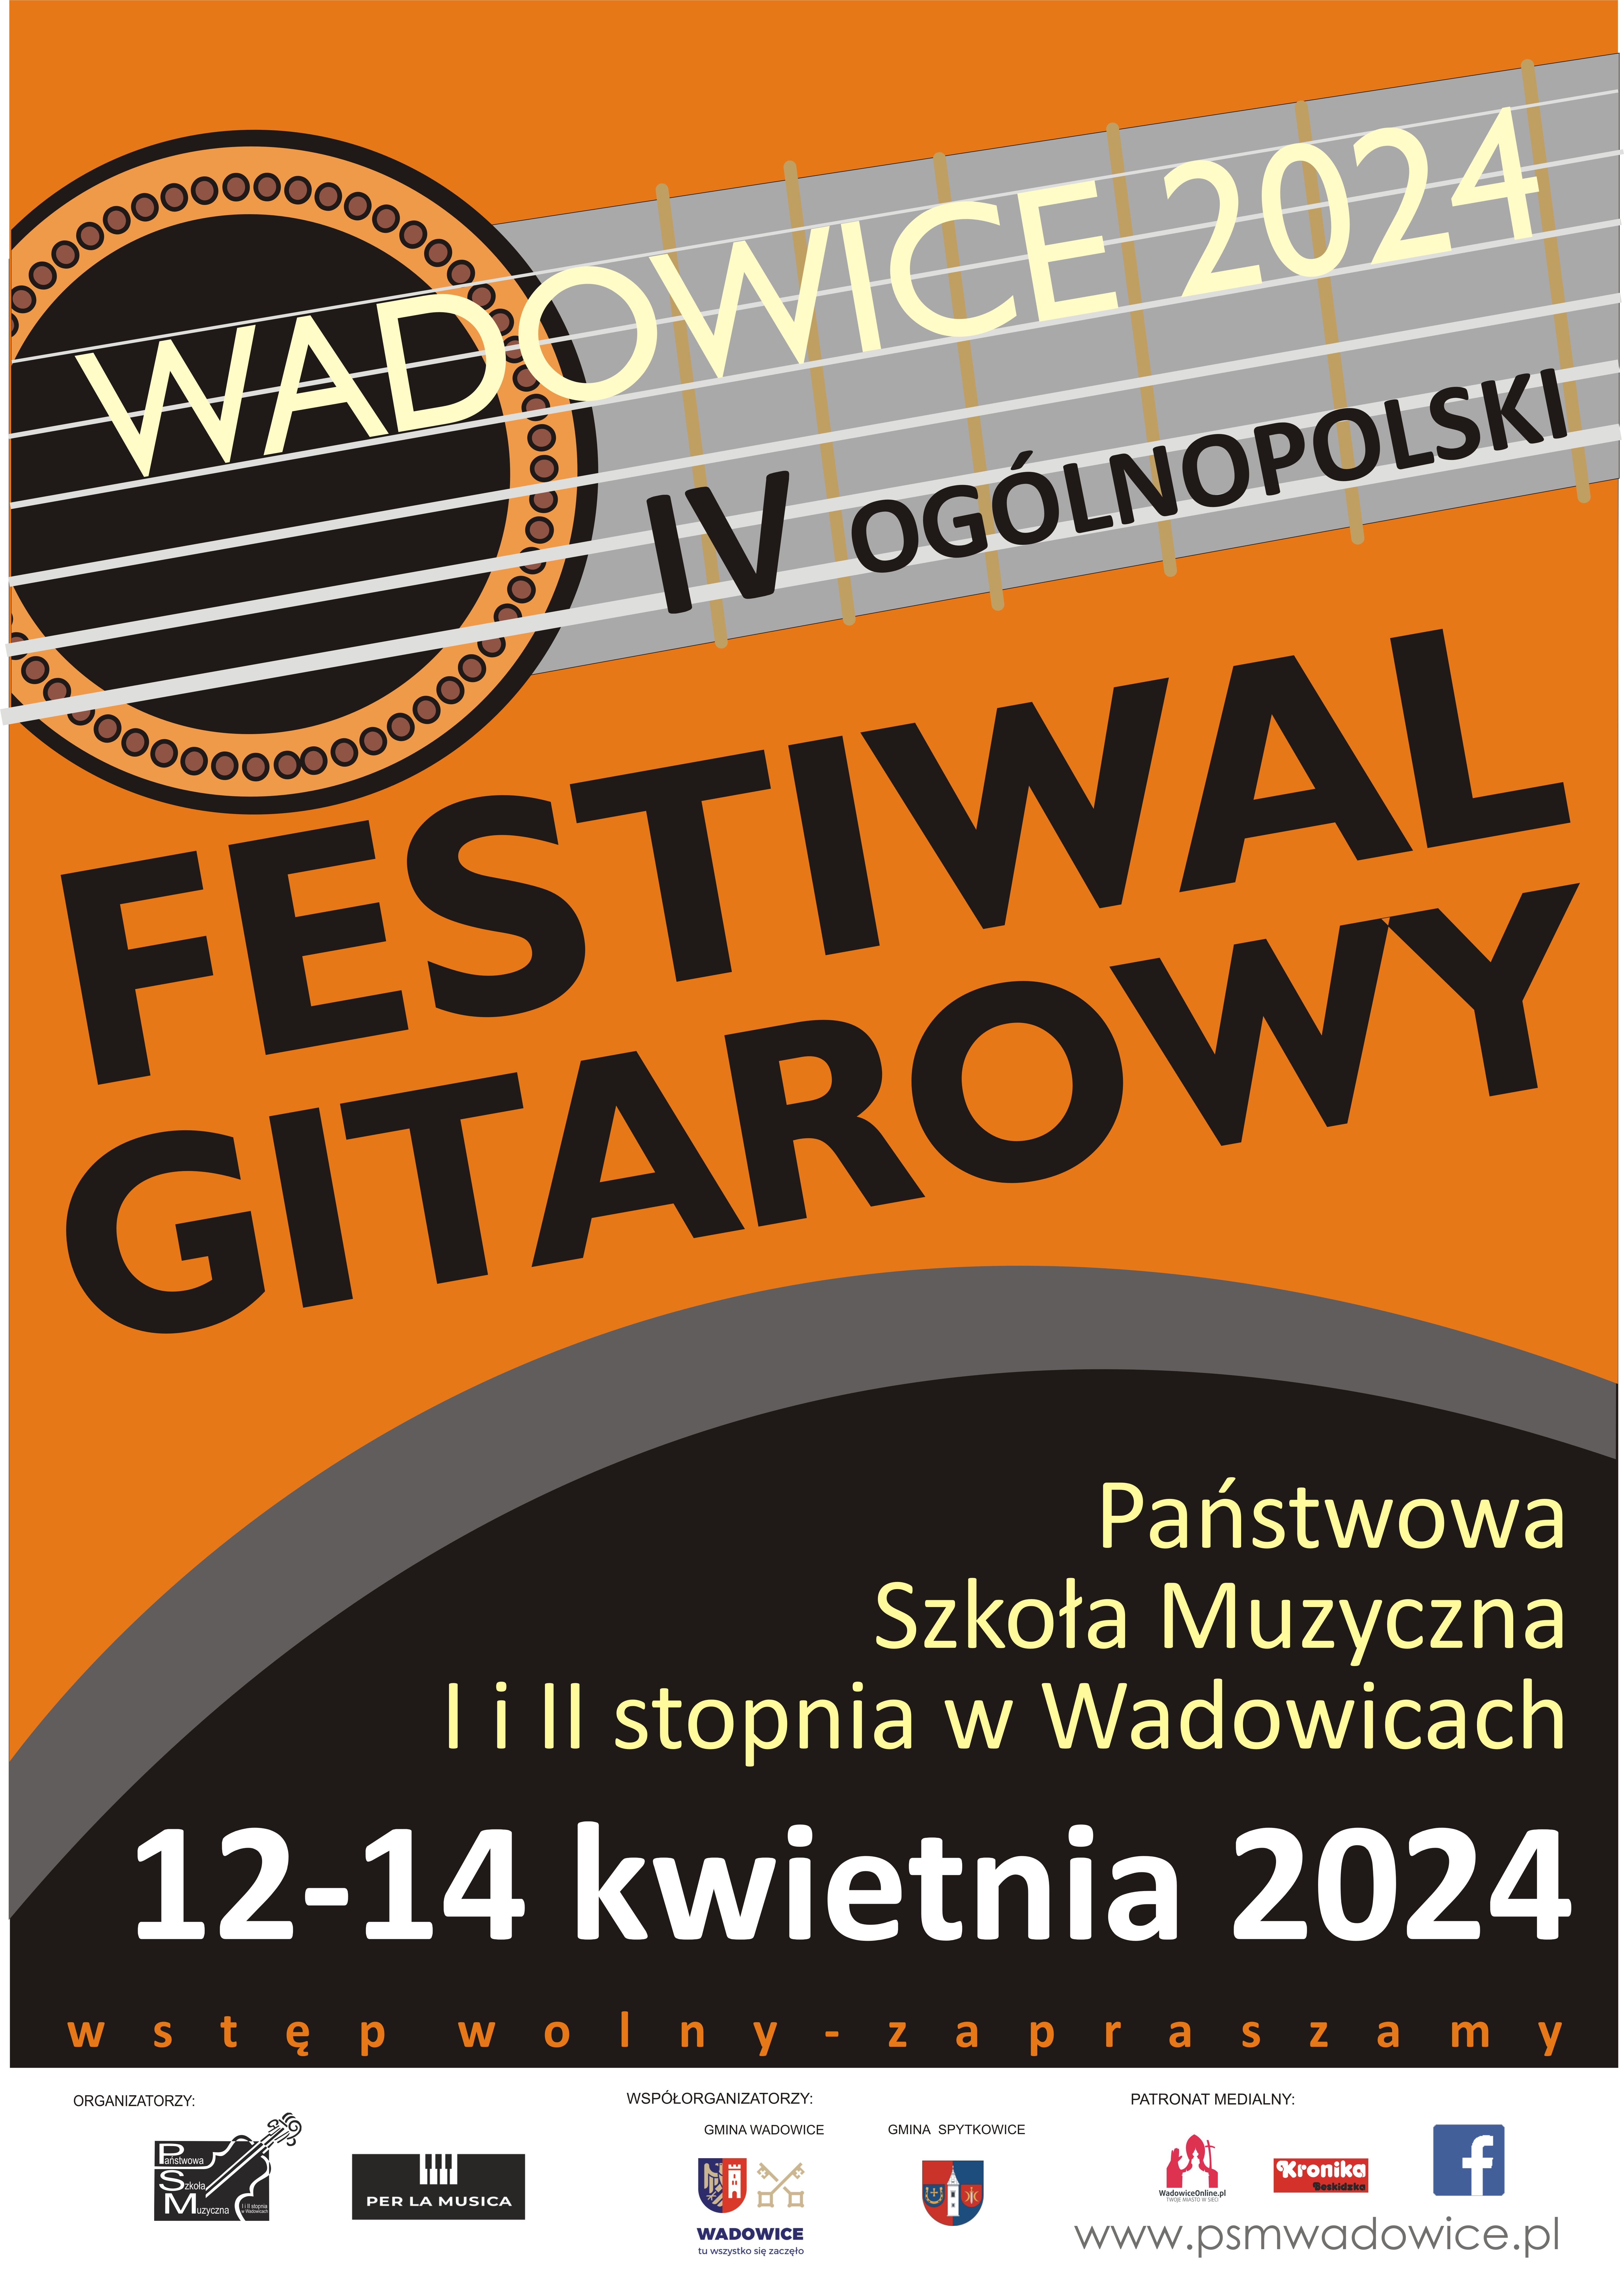 4. Ogólnopolski Festiwal Fagotowy - Wadowice 2024